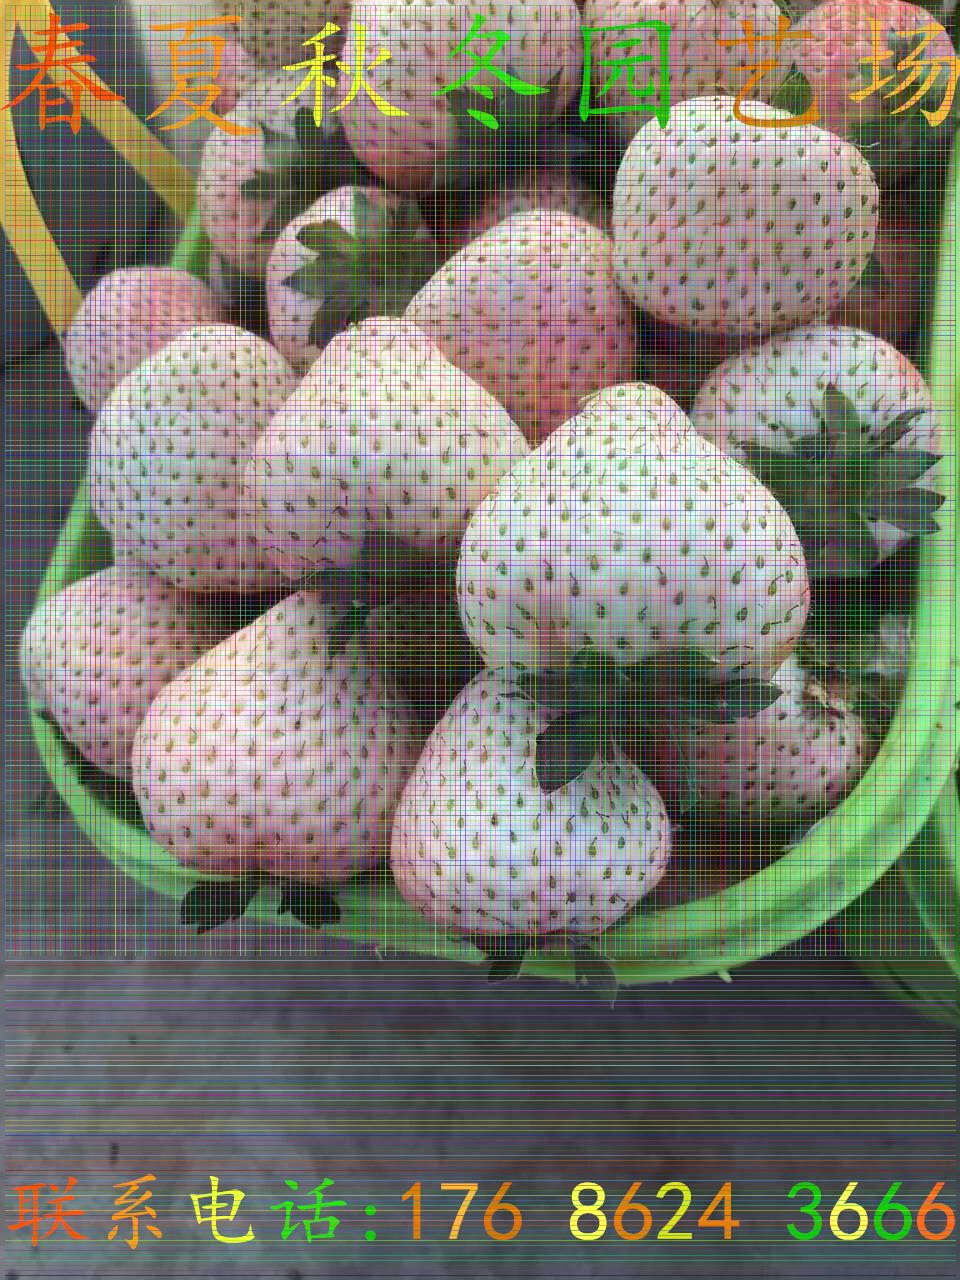 迁安草莓王子草莓苗/新品上市